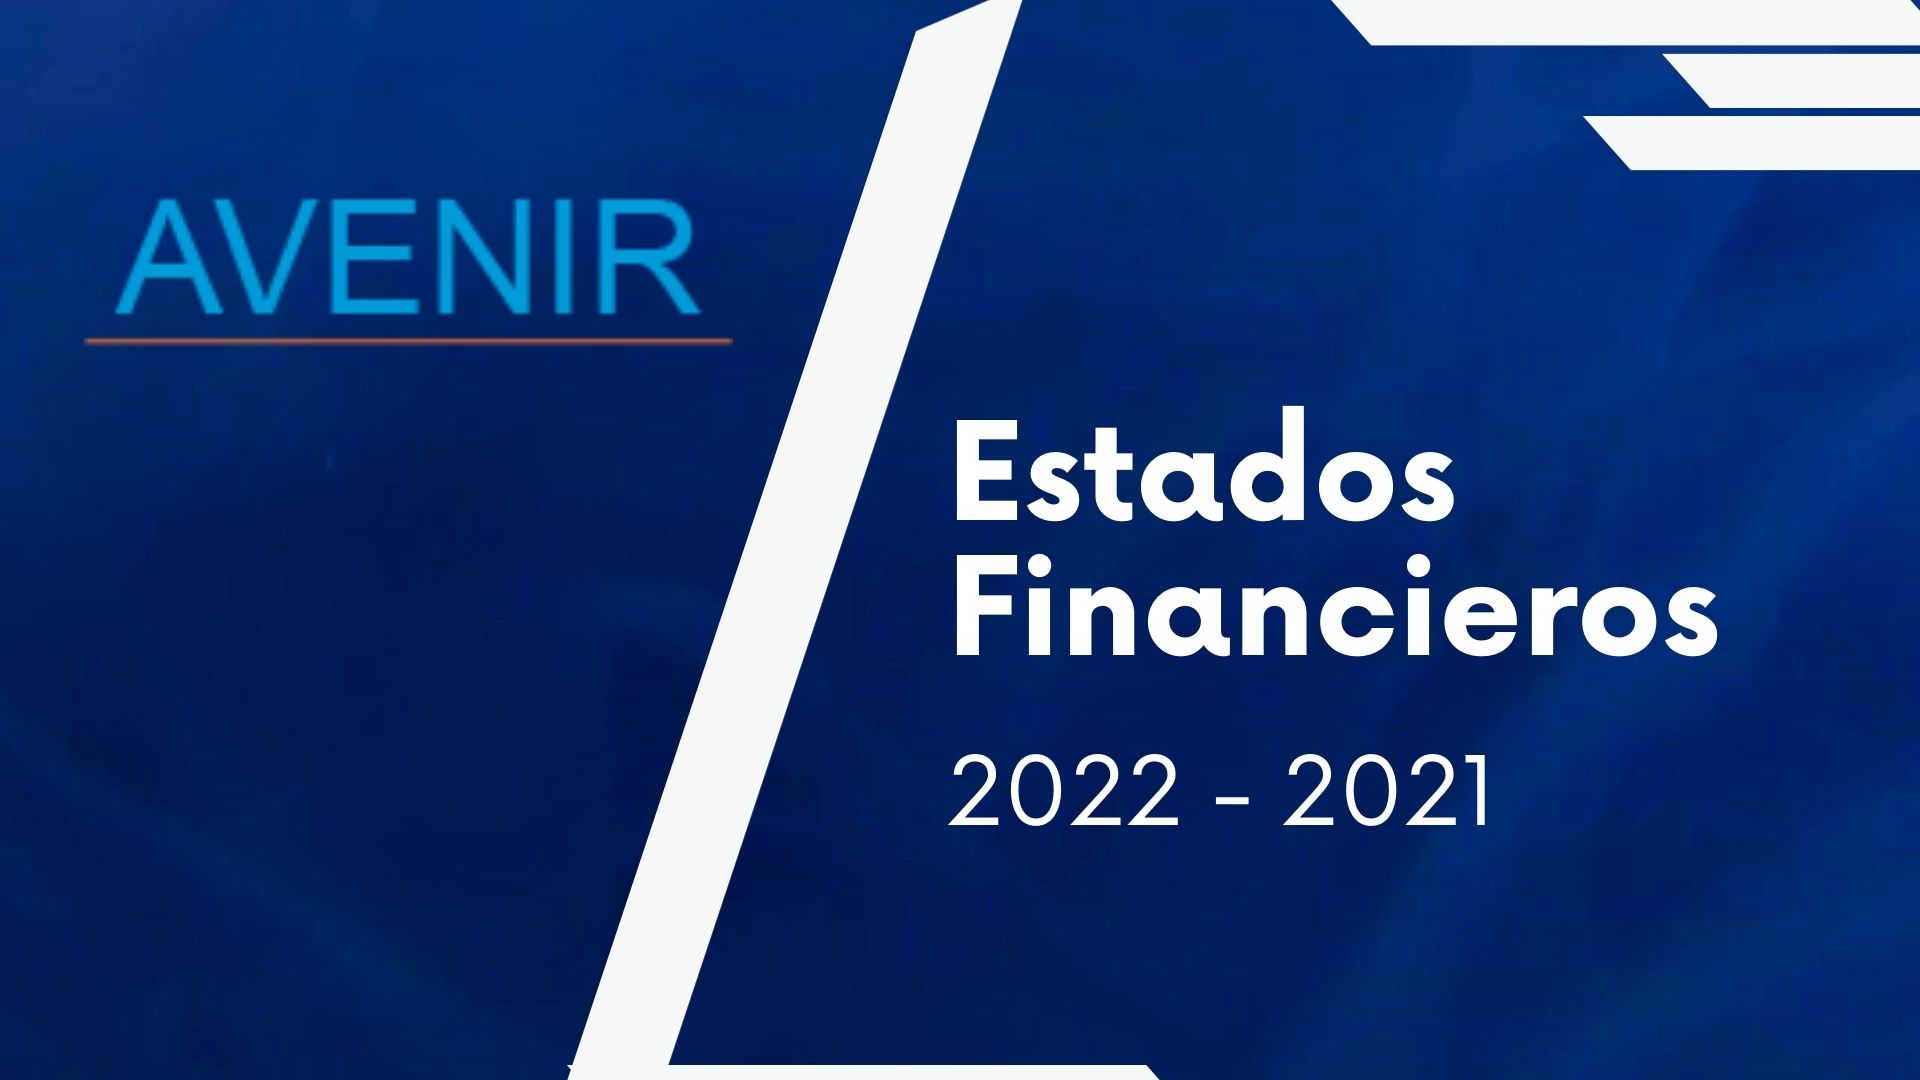 avenir-salud-contenido-estados-financieros-2022-2021